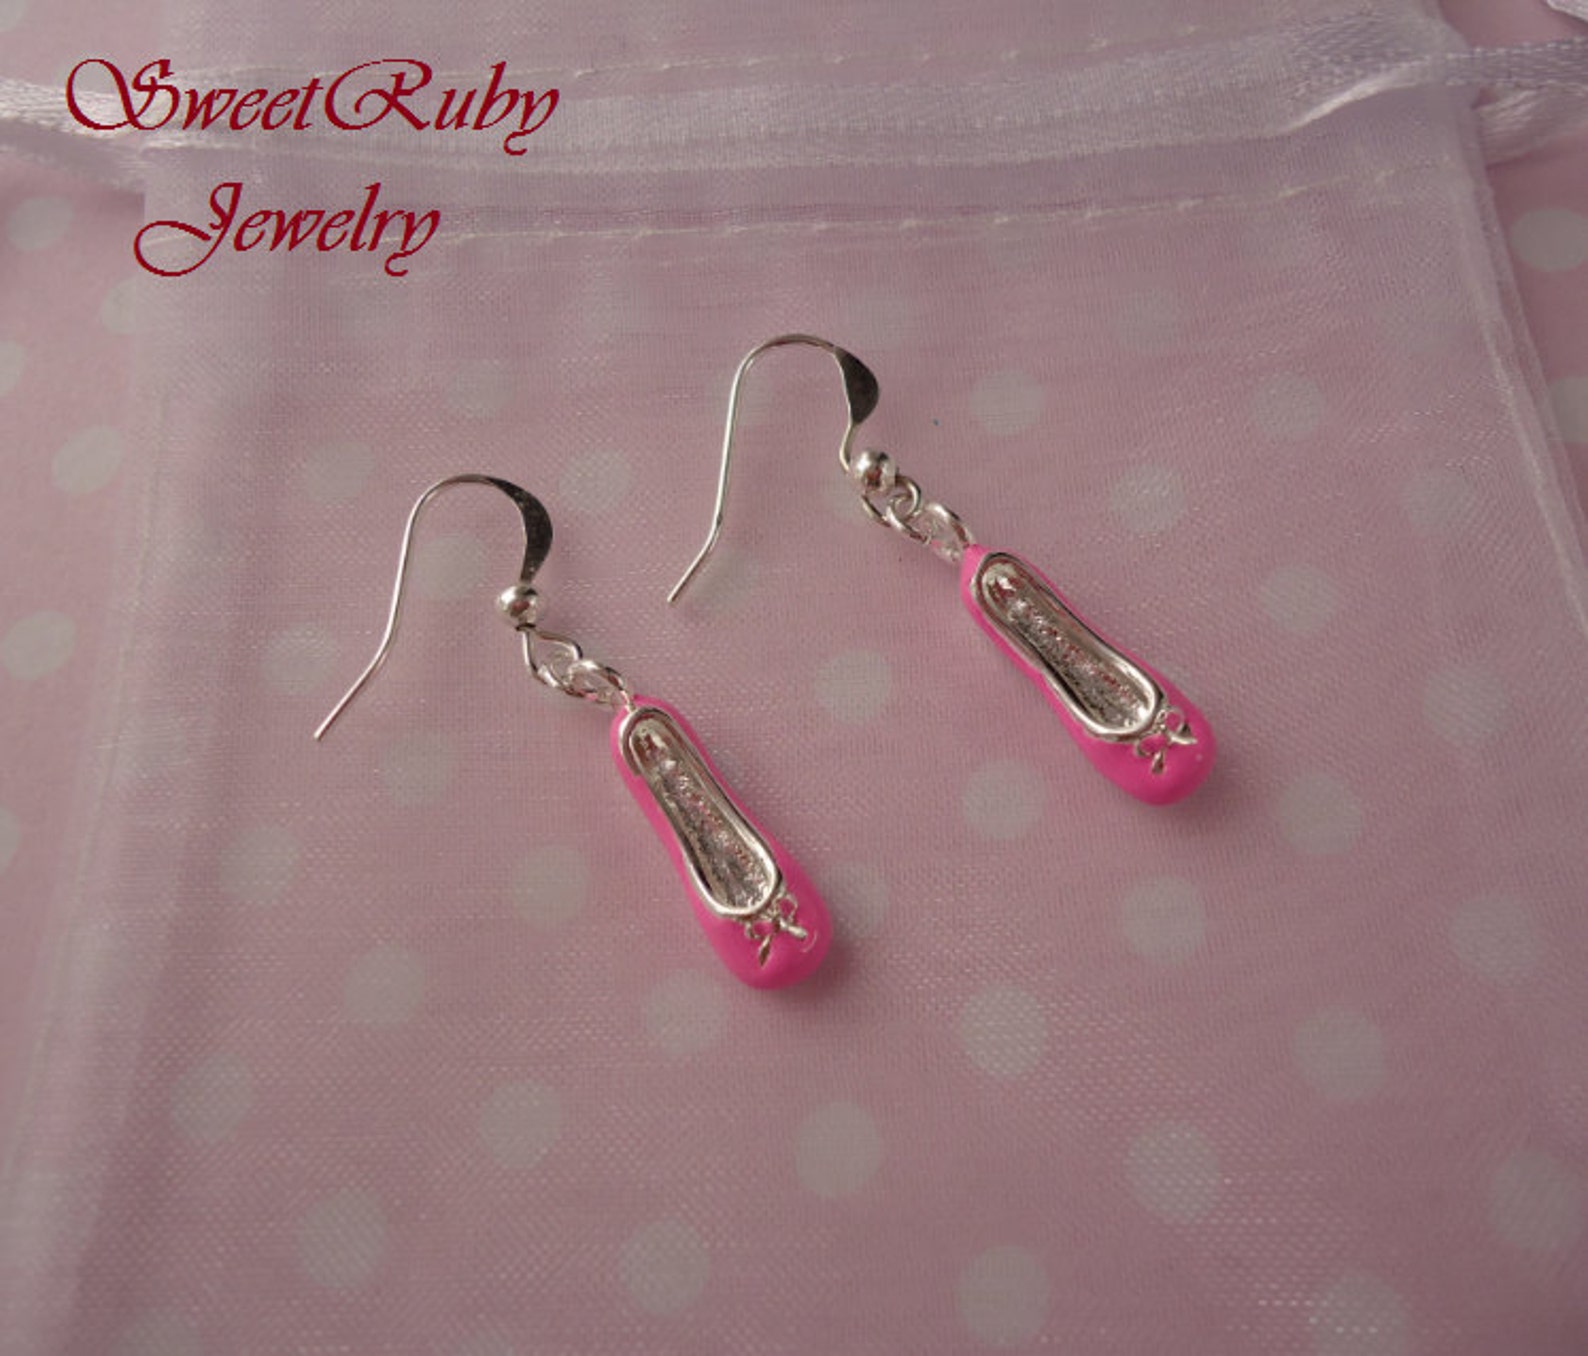 pink enamel dance shoe / ballet shoe dangle earrings - 925/10 silver filled earring wires - dance earrings/ballet earrings - dan